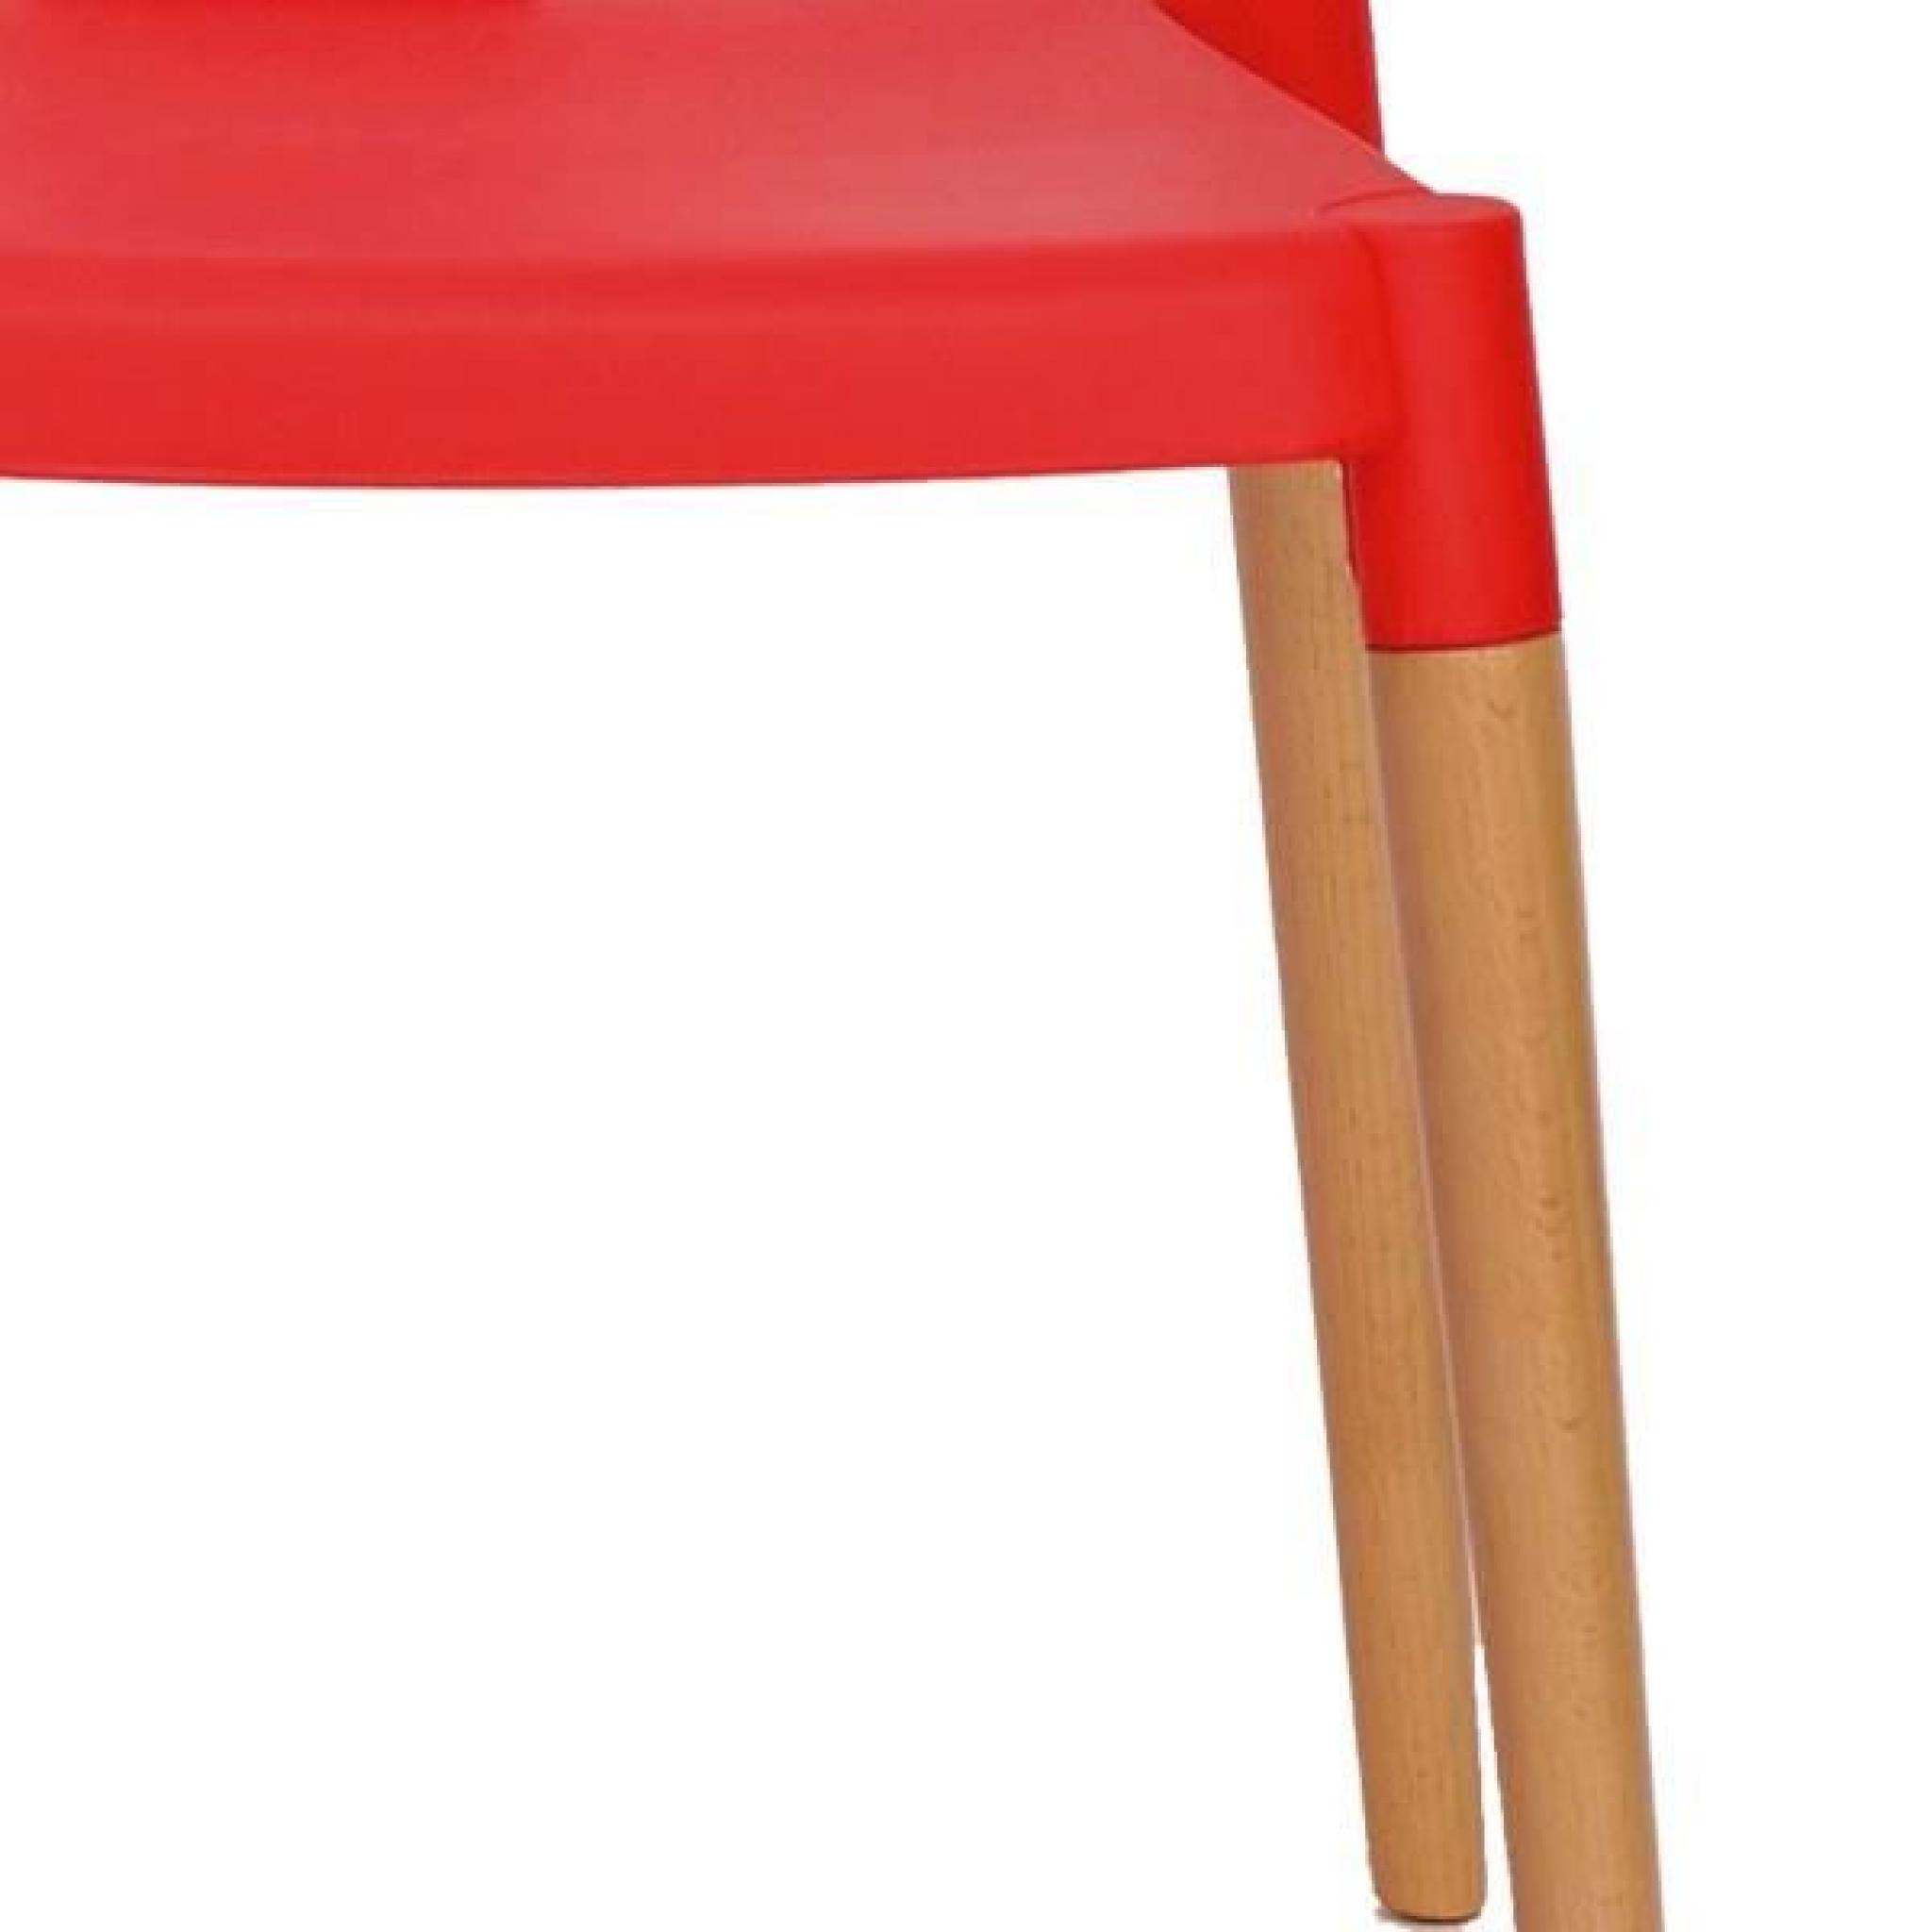 Quatuor de chaises Rouge - TARB - L 56 x l 44 x H 75 cm pas cher